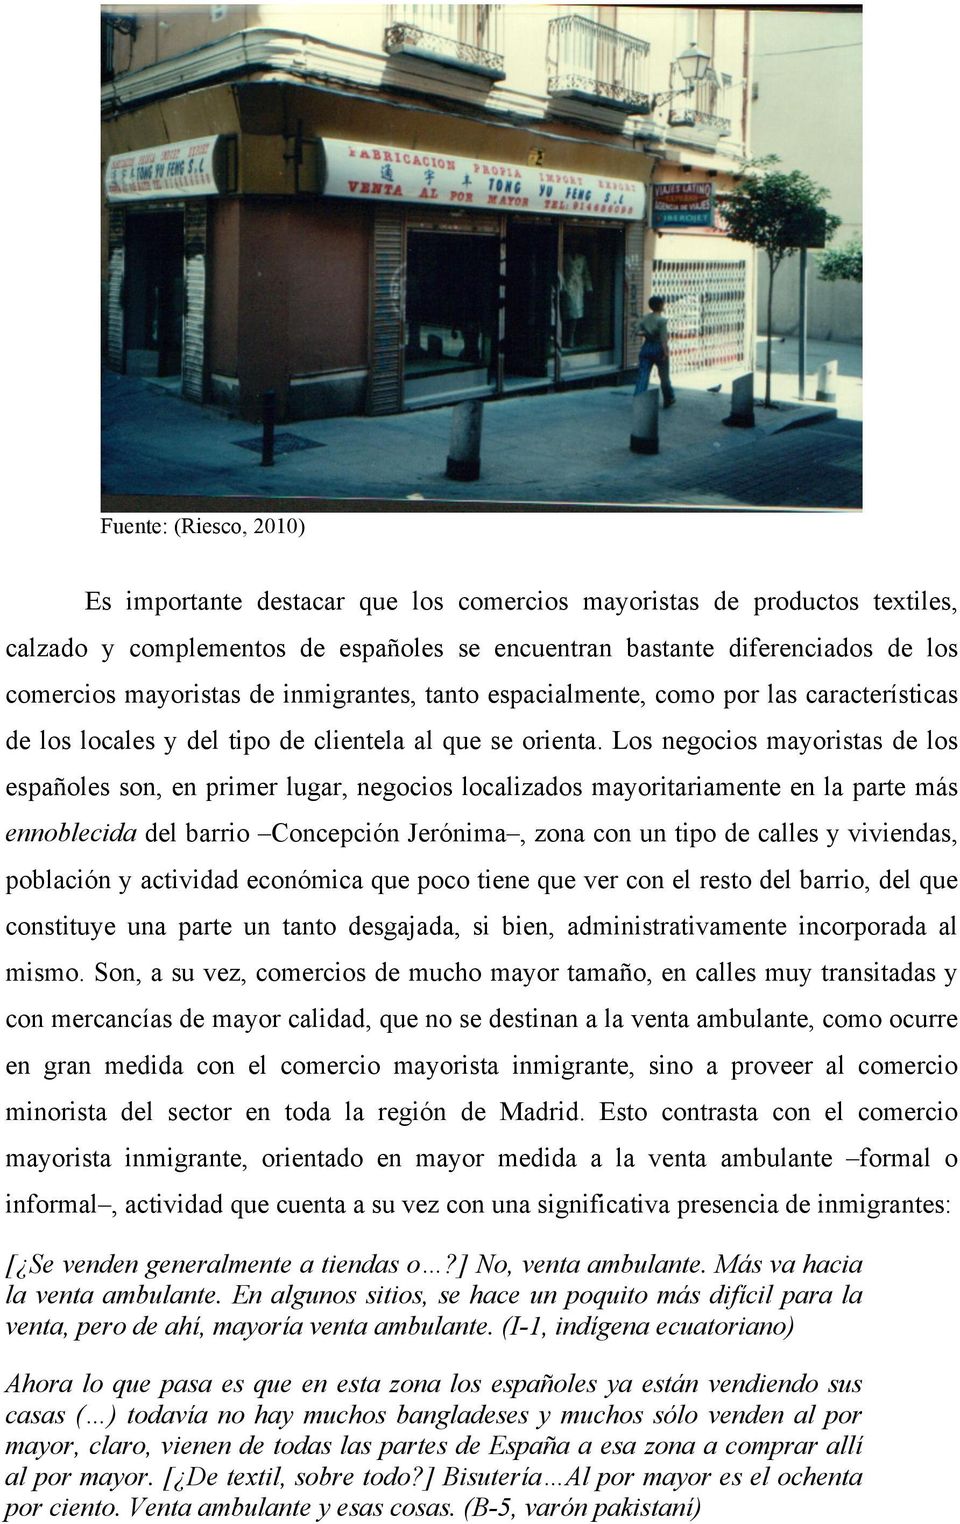 Los negocios mayoristas de los españoles son, en primer lugar, negocios localizados mayoritariamente en la parte más ennoblecida del barrio Concepción Jerónima, zona con un tipo de calles y